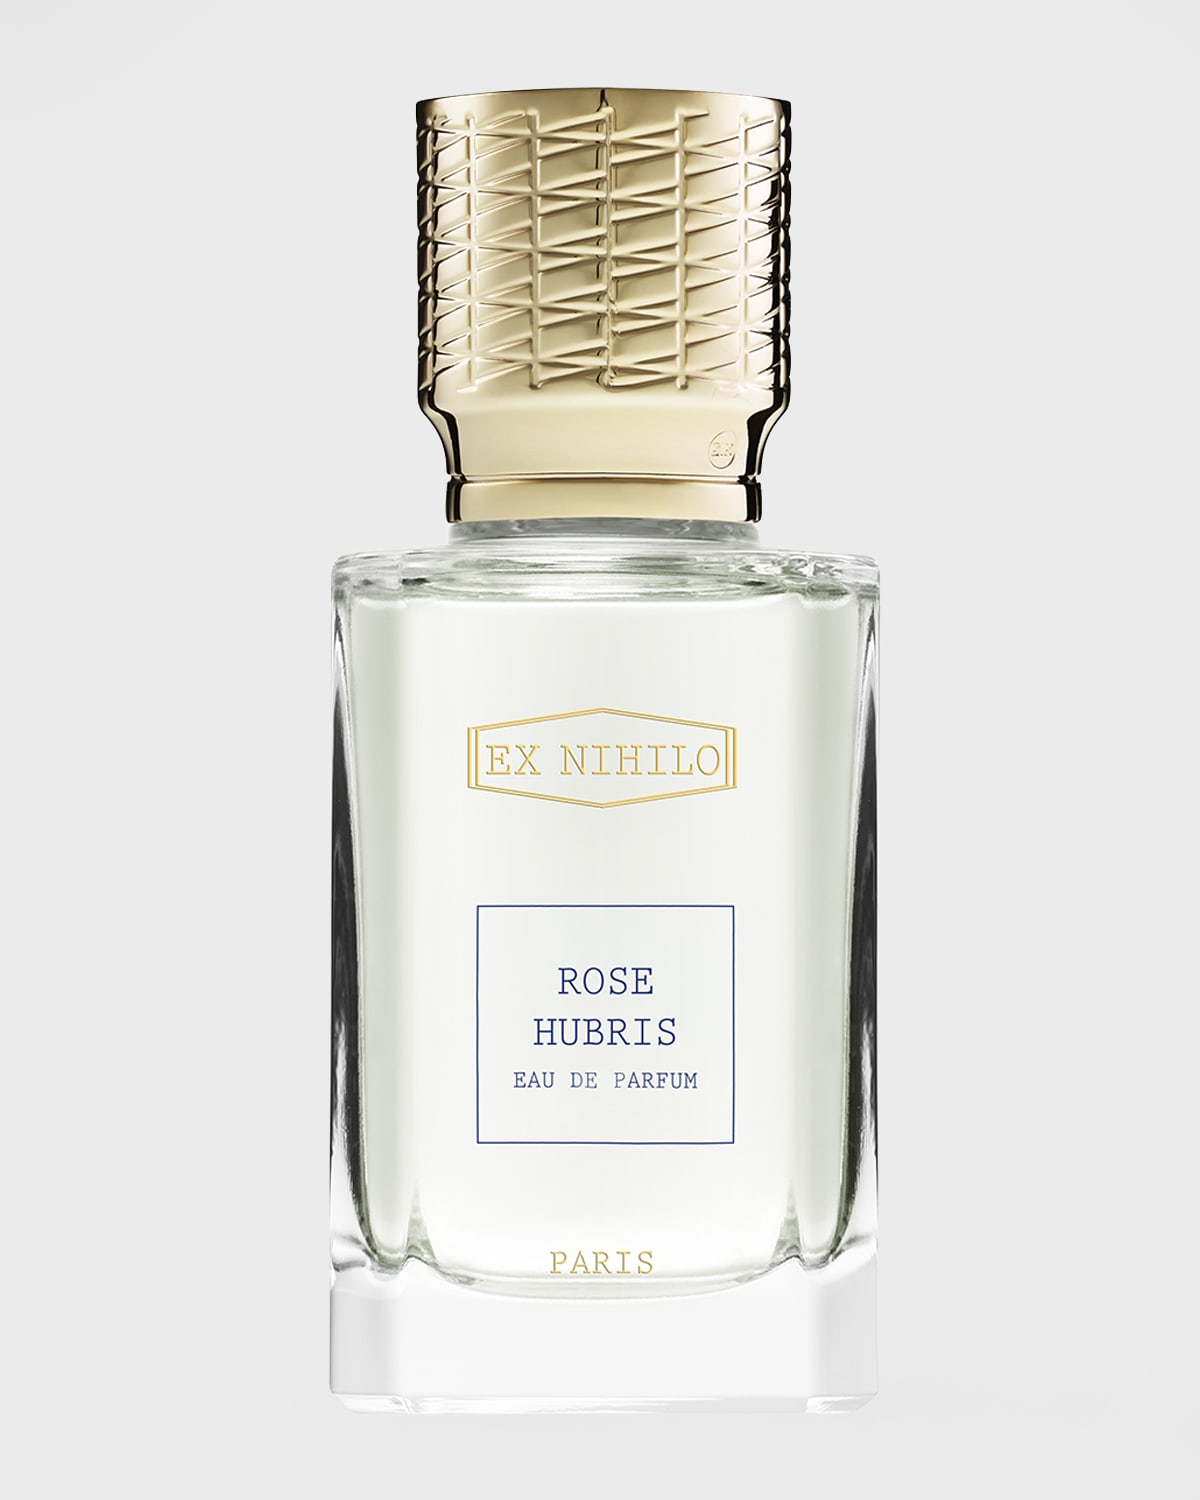 Rose Hubris Eau de Parfum, 1.7 oz.